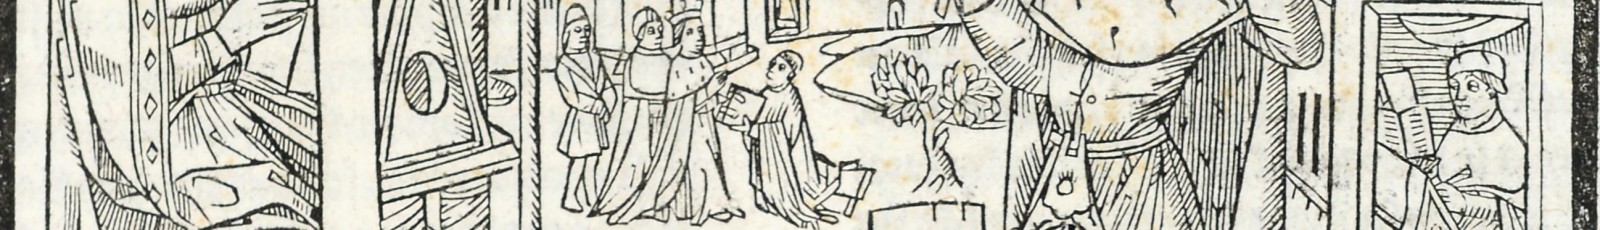 La Cité de Dieu, trad. Raoul de Presles, 1486